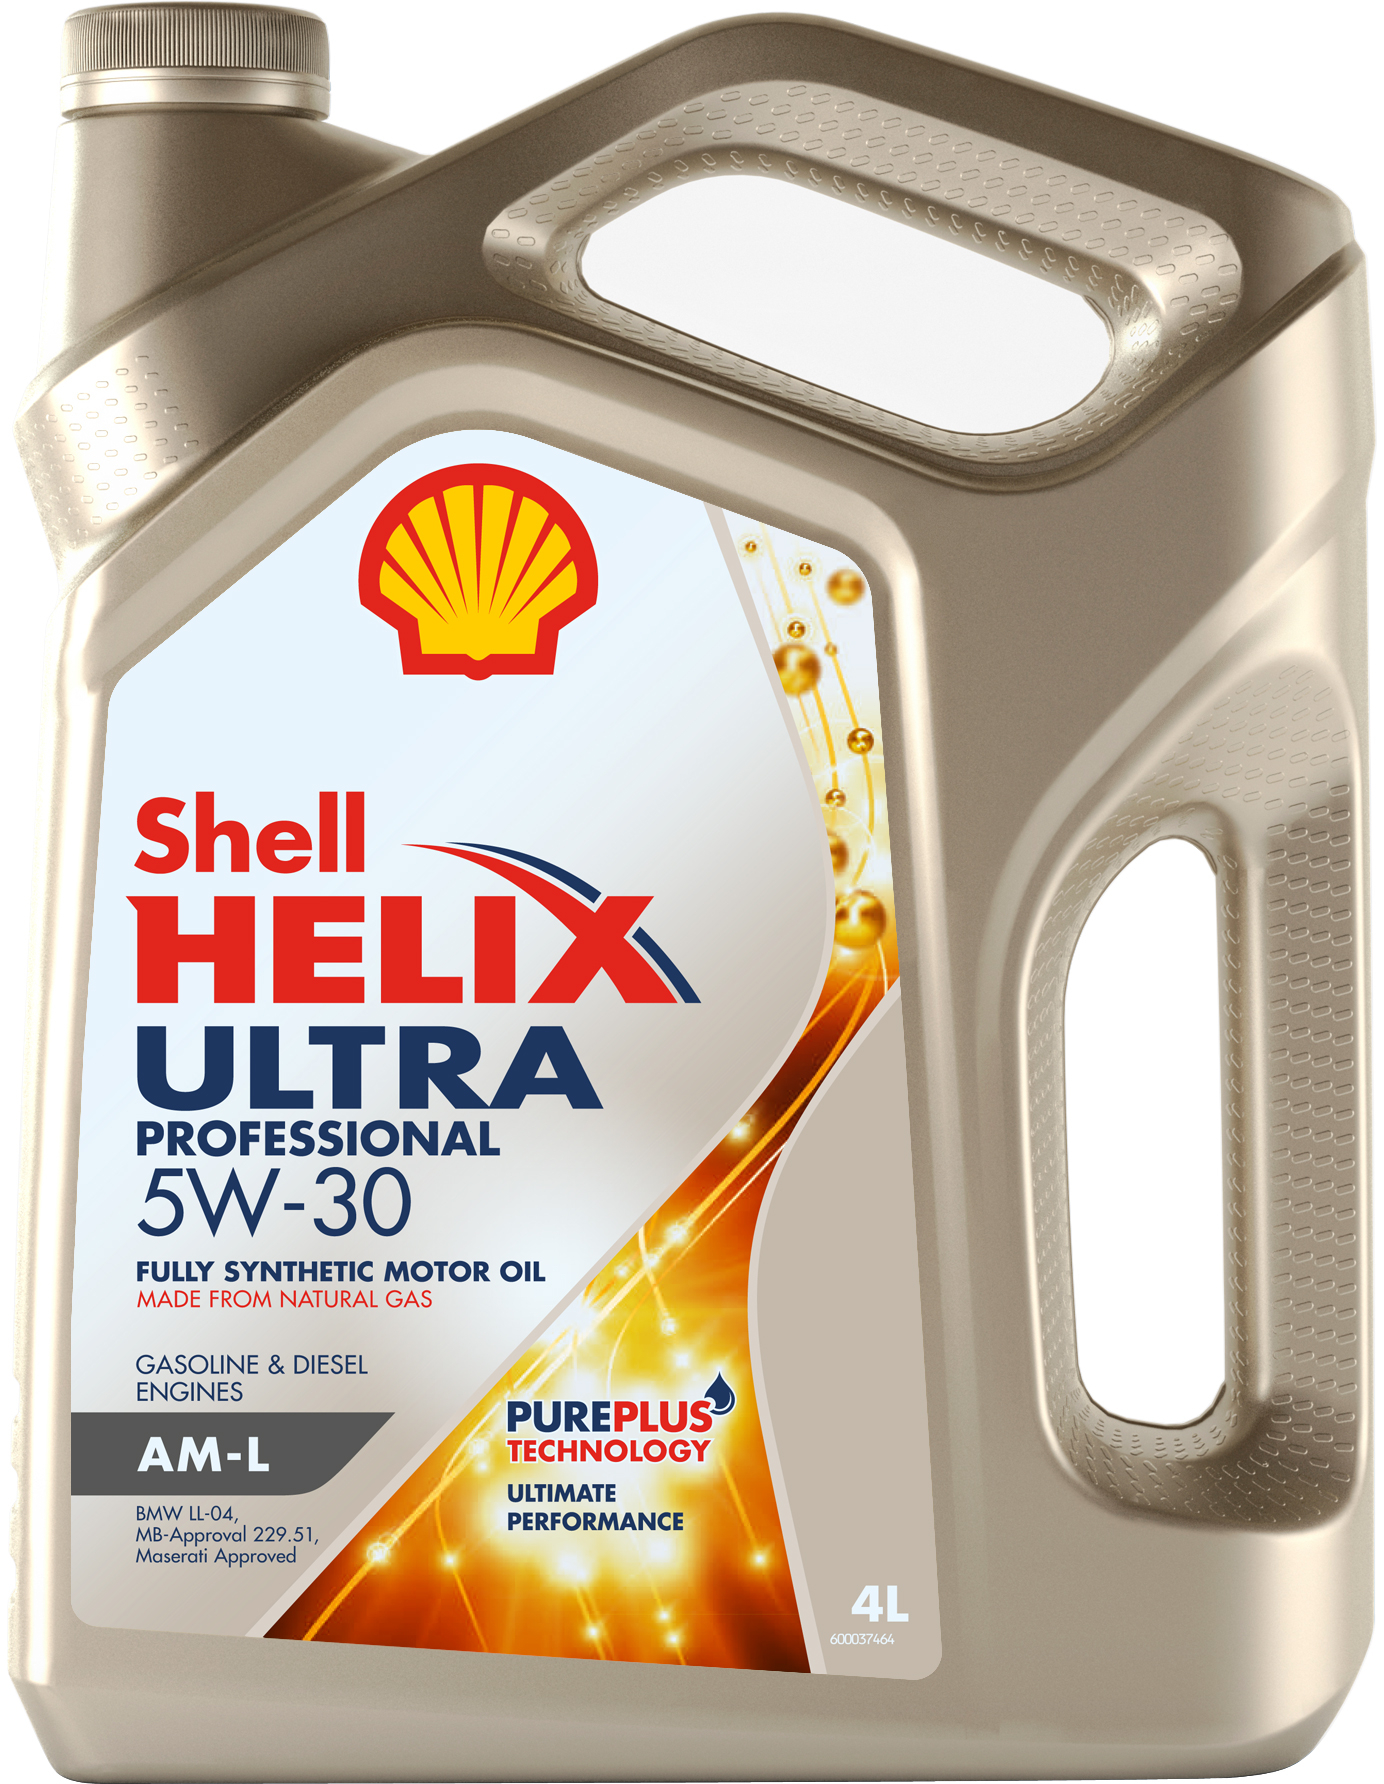 Моторное масло Shell Helix Ultra Professional AM-L 5W-30, 550046353, 4л